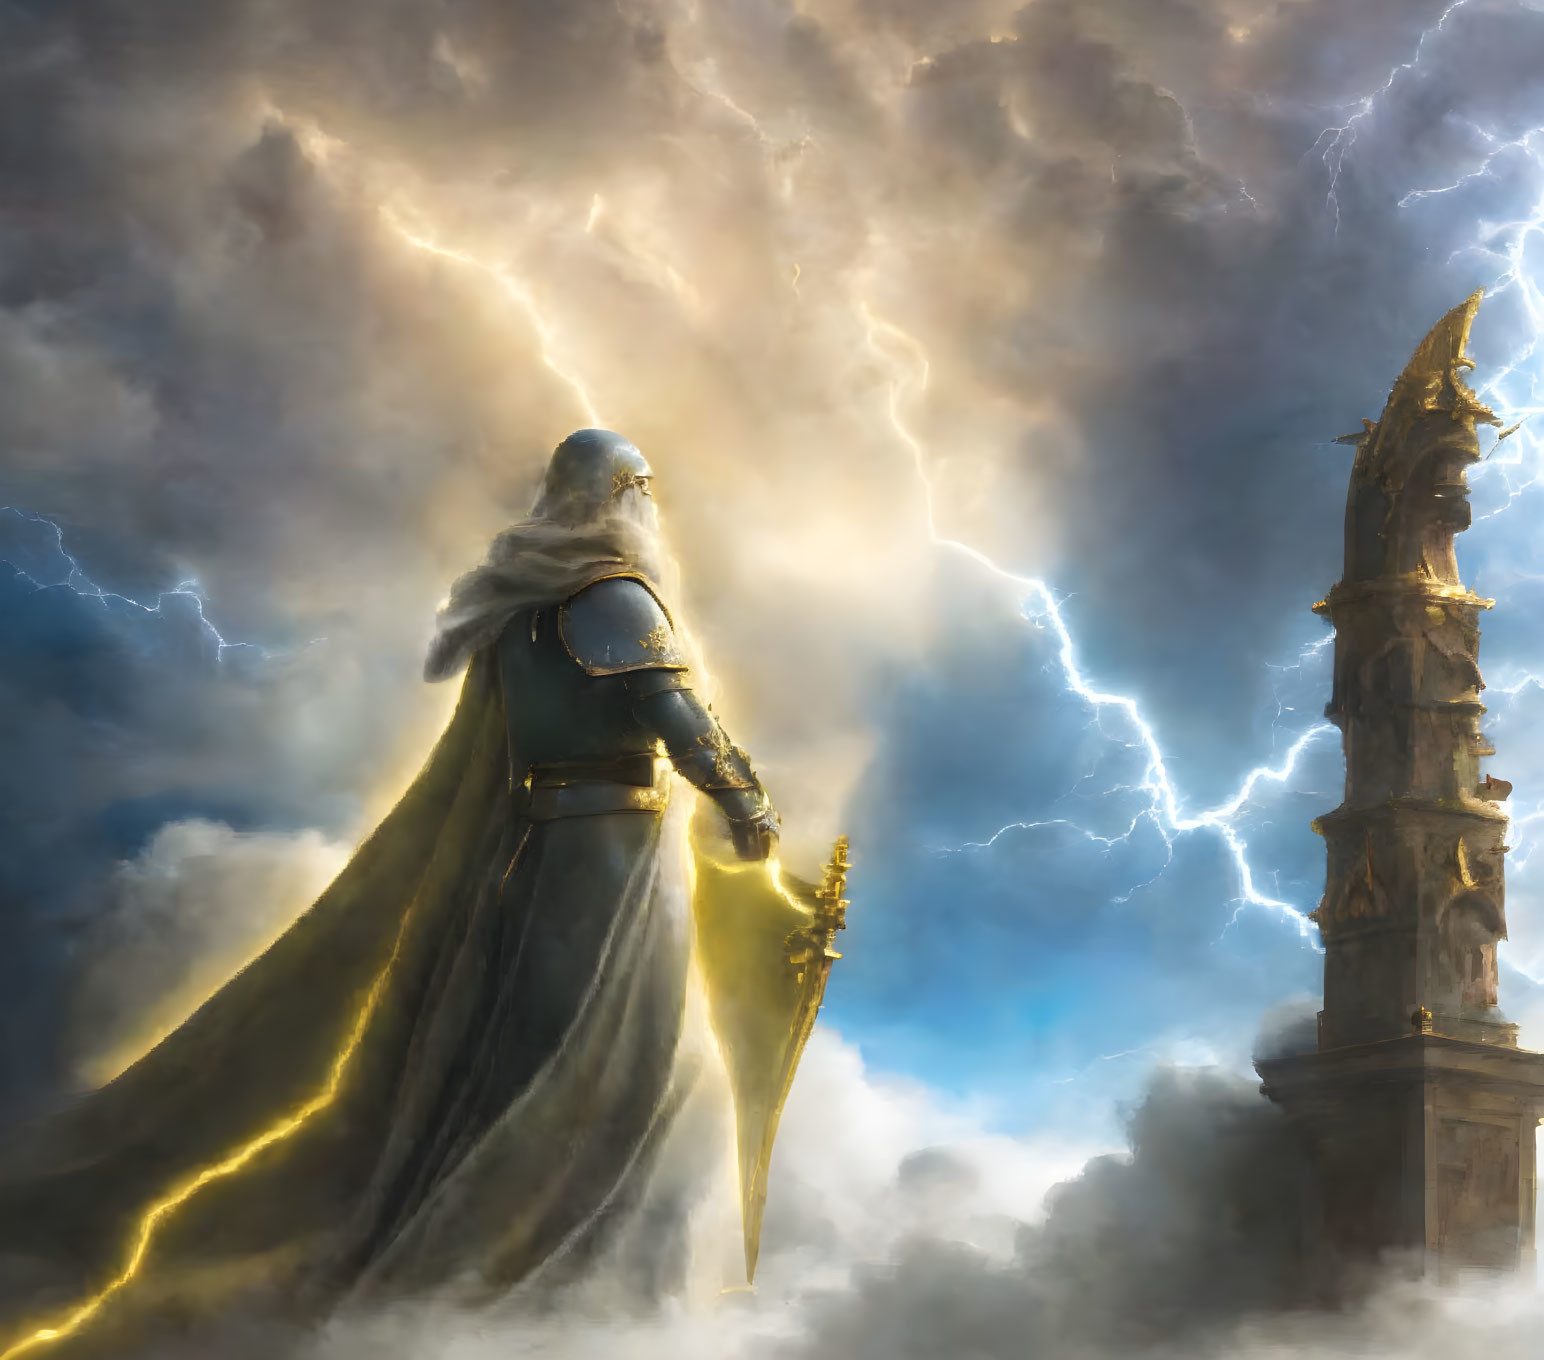 The Thunder God's Approach